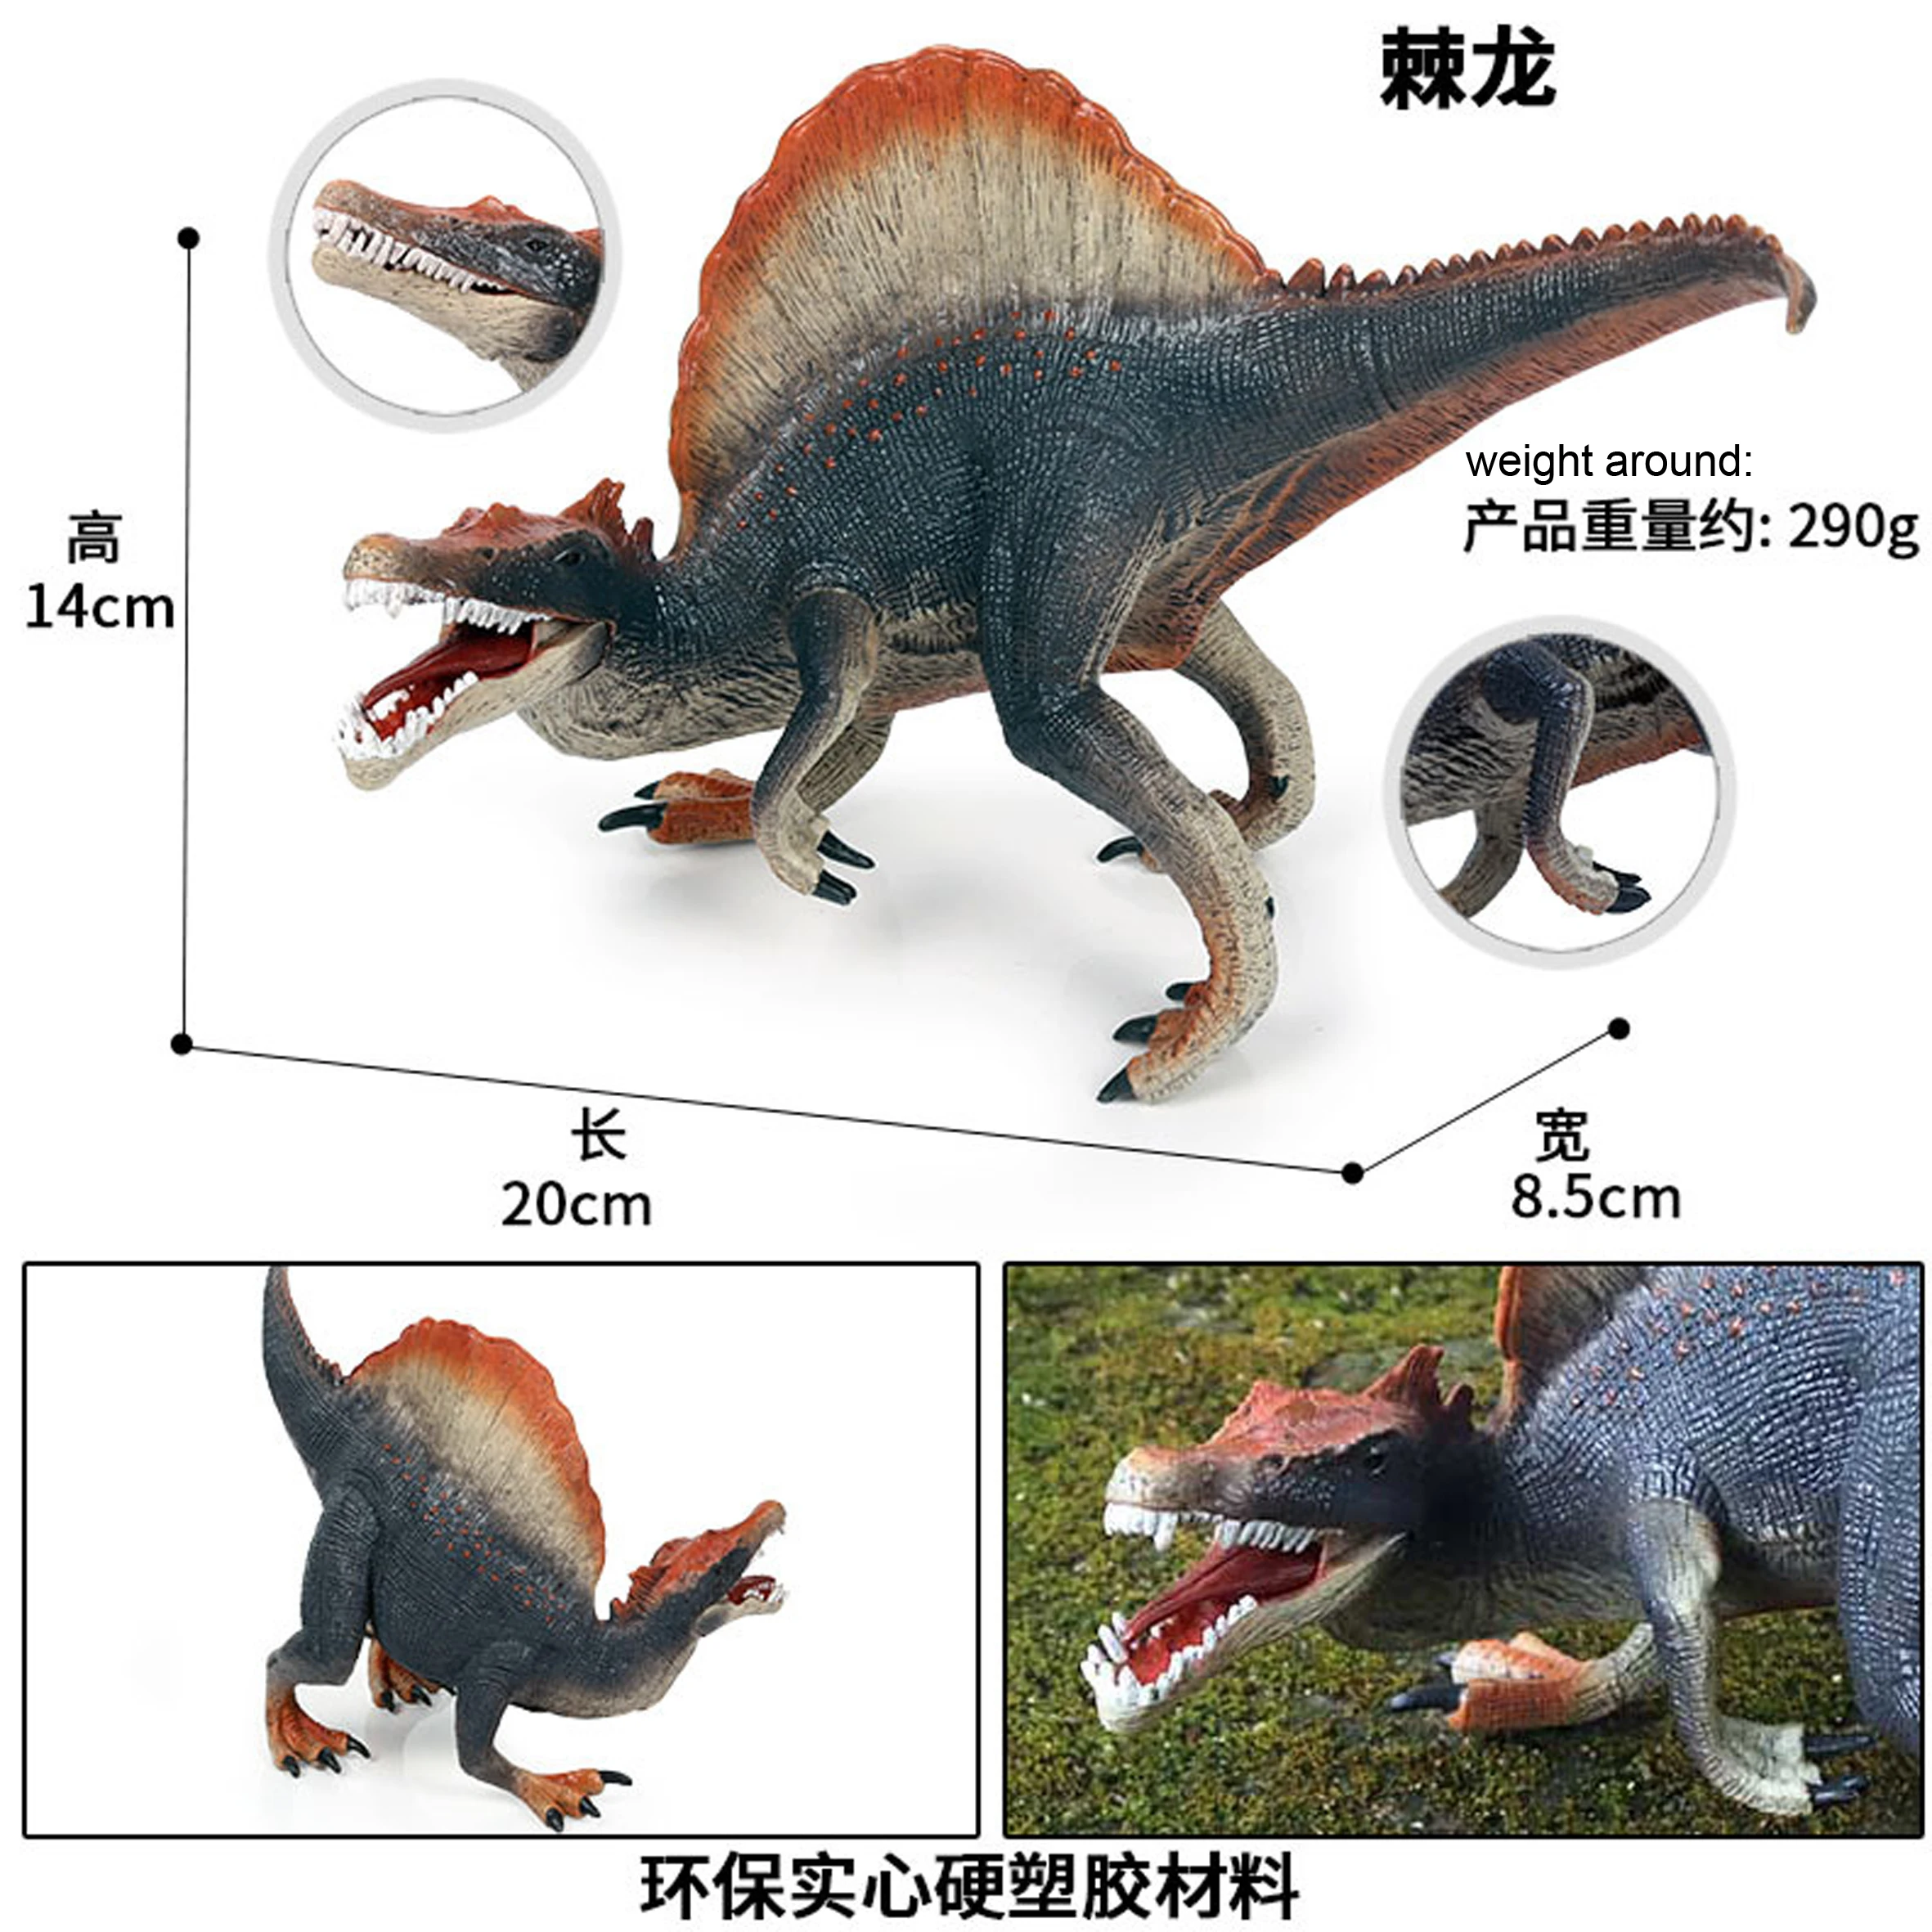 1 шт. цветные фигурки спинозавра для ползания Реалистичные Модели Динозавров детский подарок на день рождения Детские игрушки для животных Коллекция Юрского периода